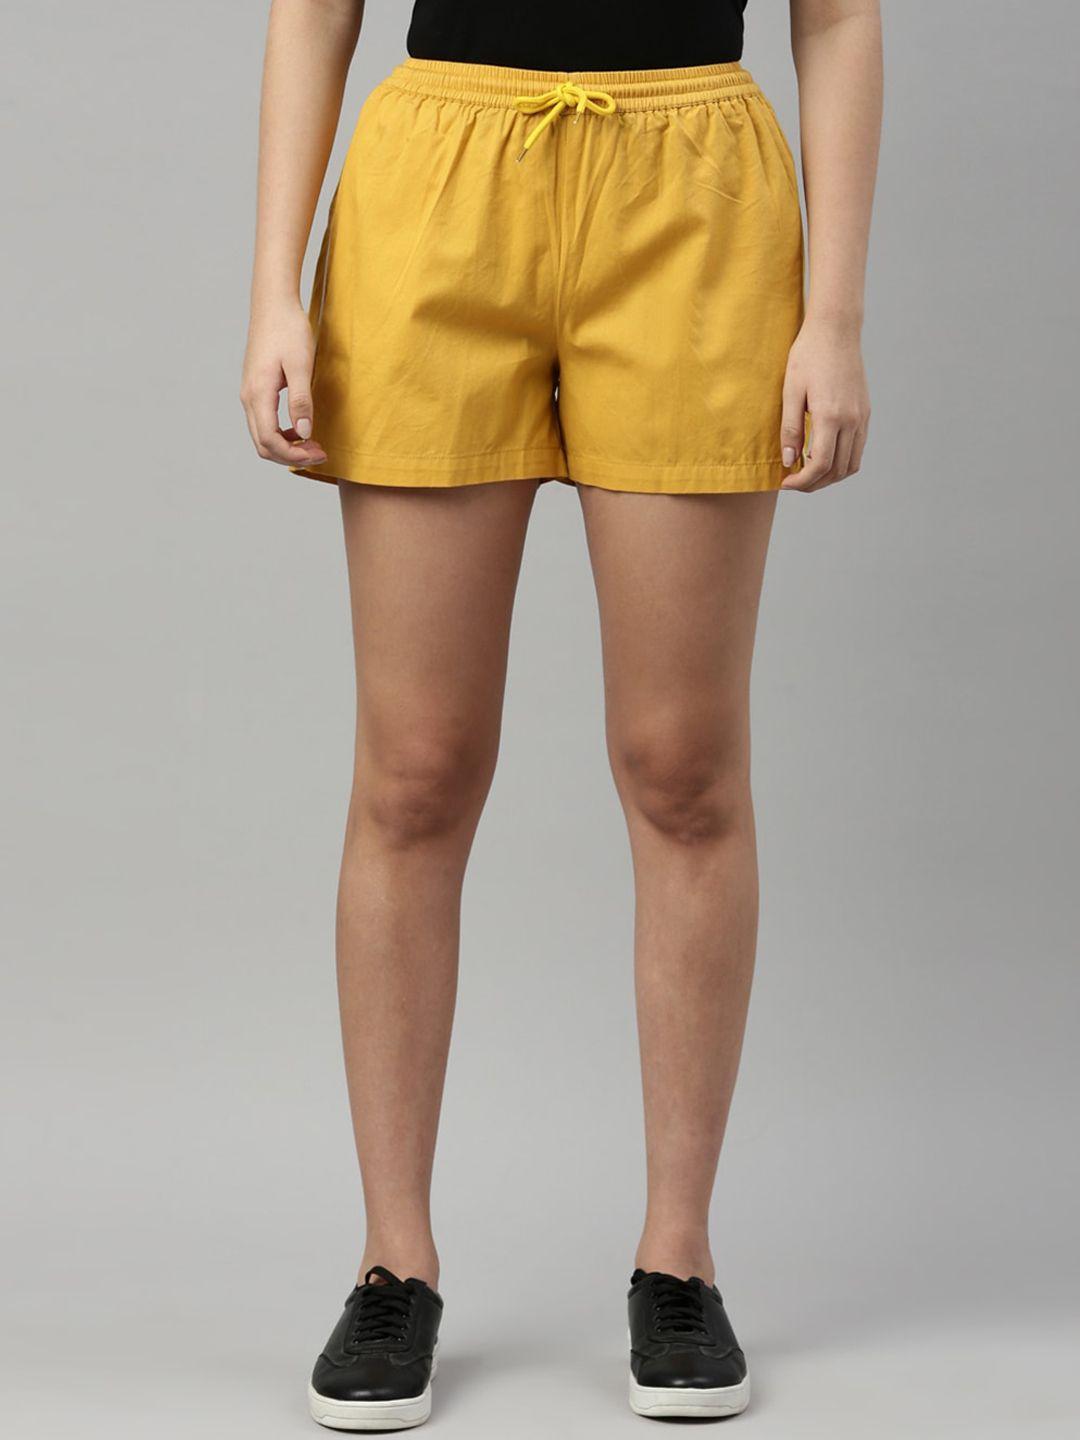 zheia women yellow shorts